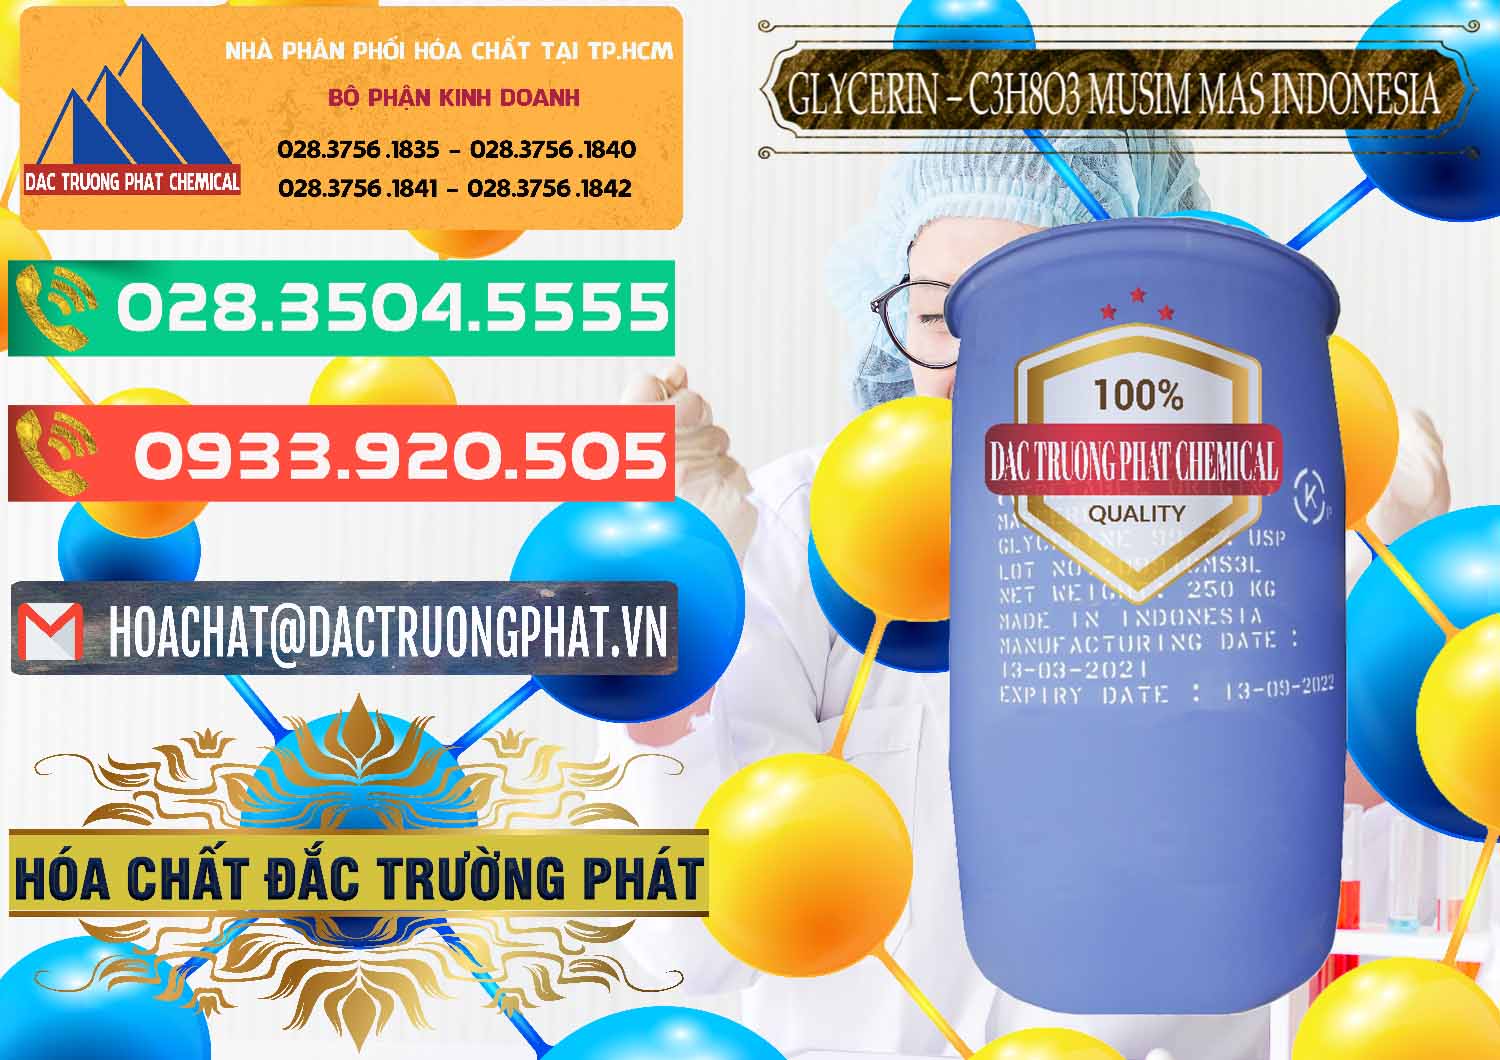 Cty chuyên bán & cung ứng Glycerin – C3H8O3 99.7% Musim Mas Indonesia - 0272 - Công ty chuyên nhập khẩu & cung cấp hóa chất tại TP.HCM - congtyhoachat.com.vn